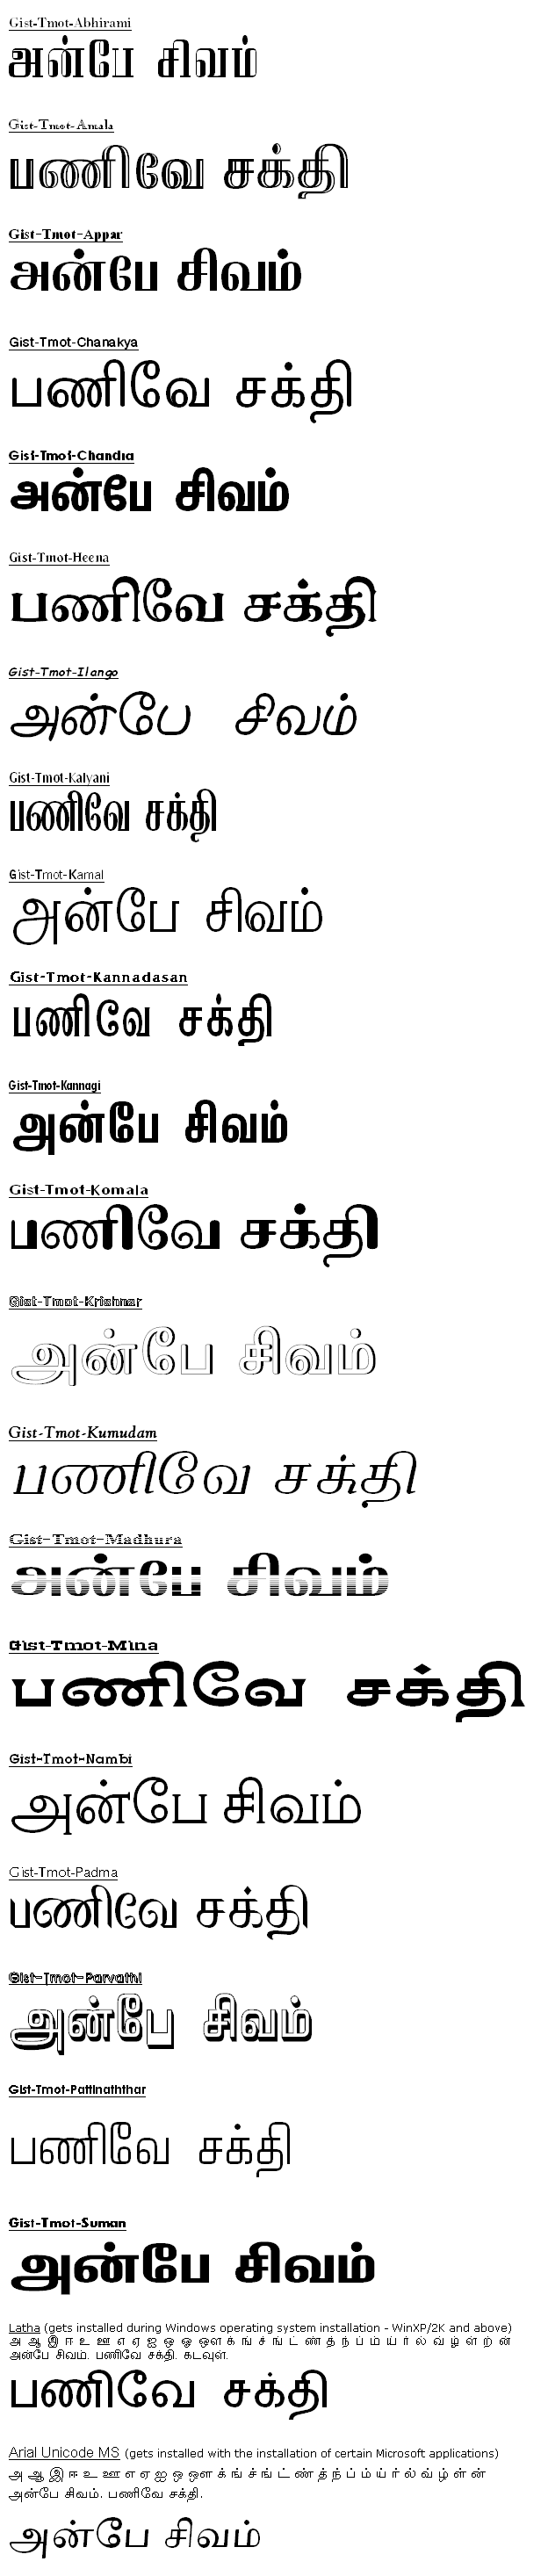 Bamini tamil font free download for ubuntu windows 7